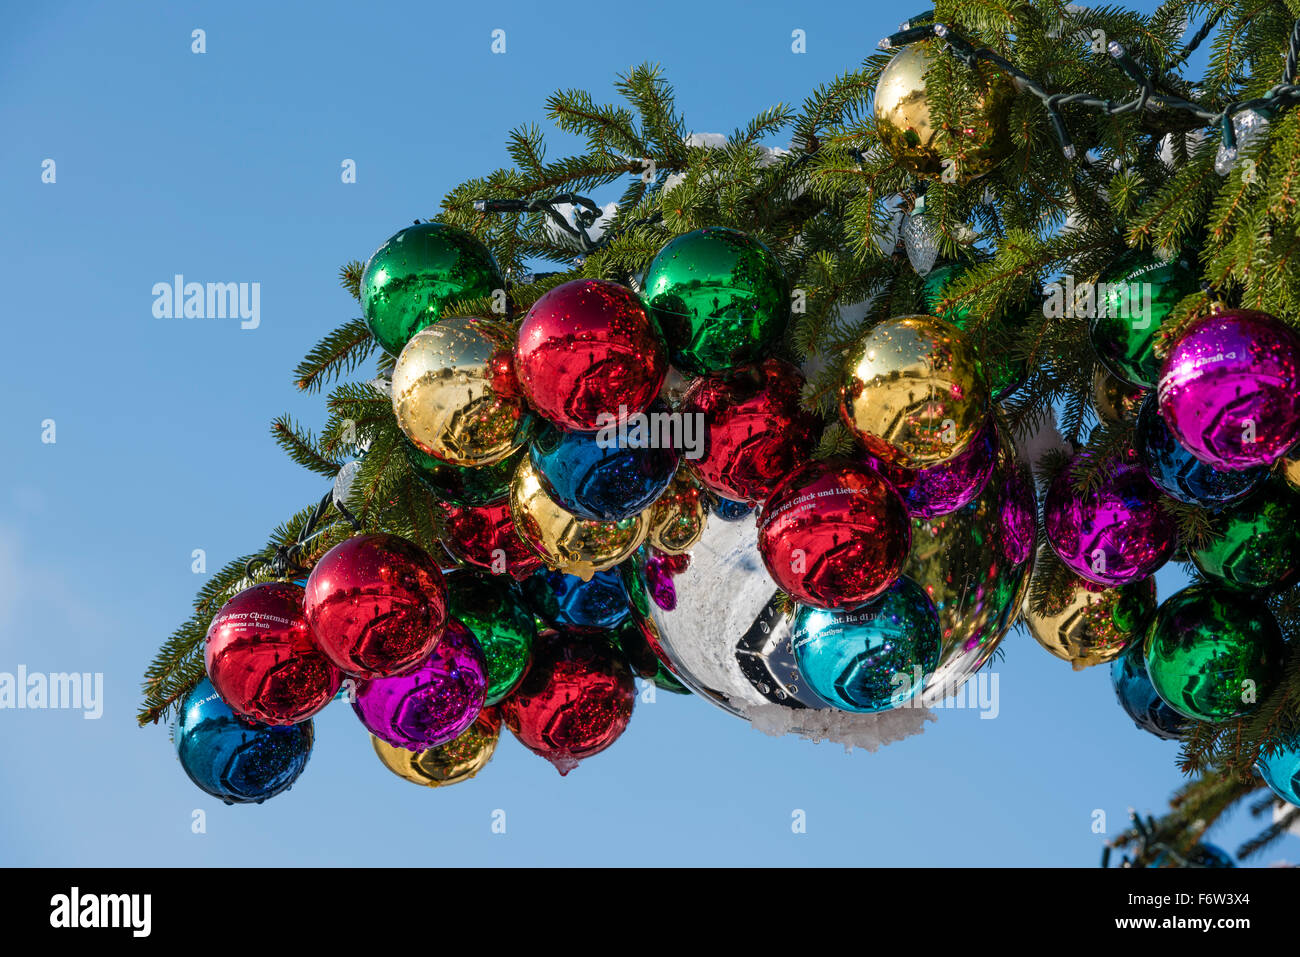 Bunte Weihnachtskugel Ornamente auf einen riesigen Weihnachtsbaum auf Saechselaeutenplatz, außerhalb Opernhaus Zürich, Schweiz. Stockfoto